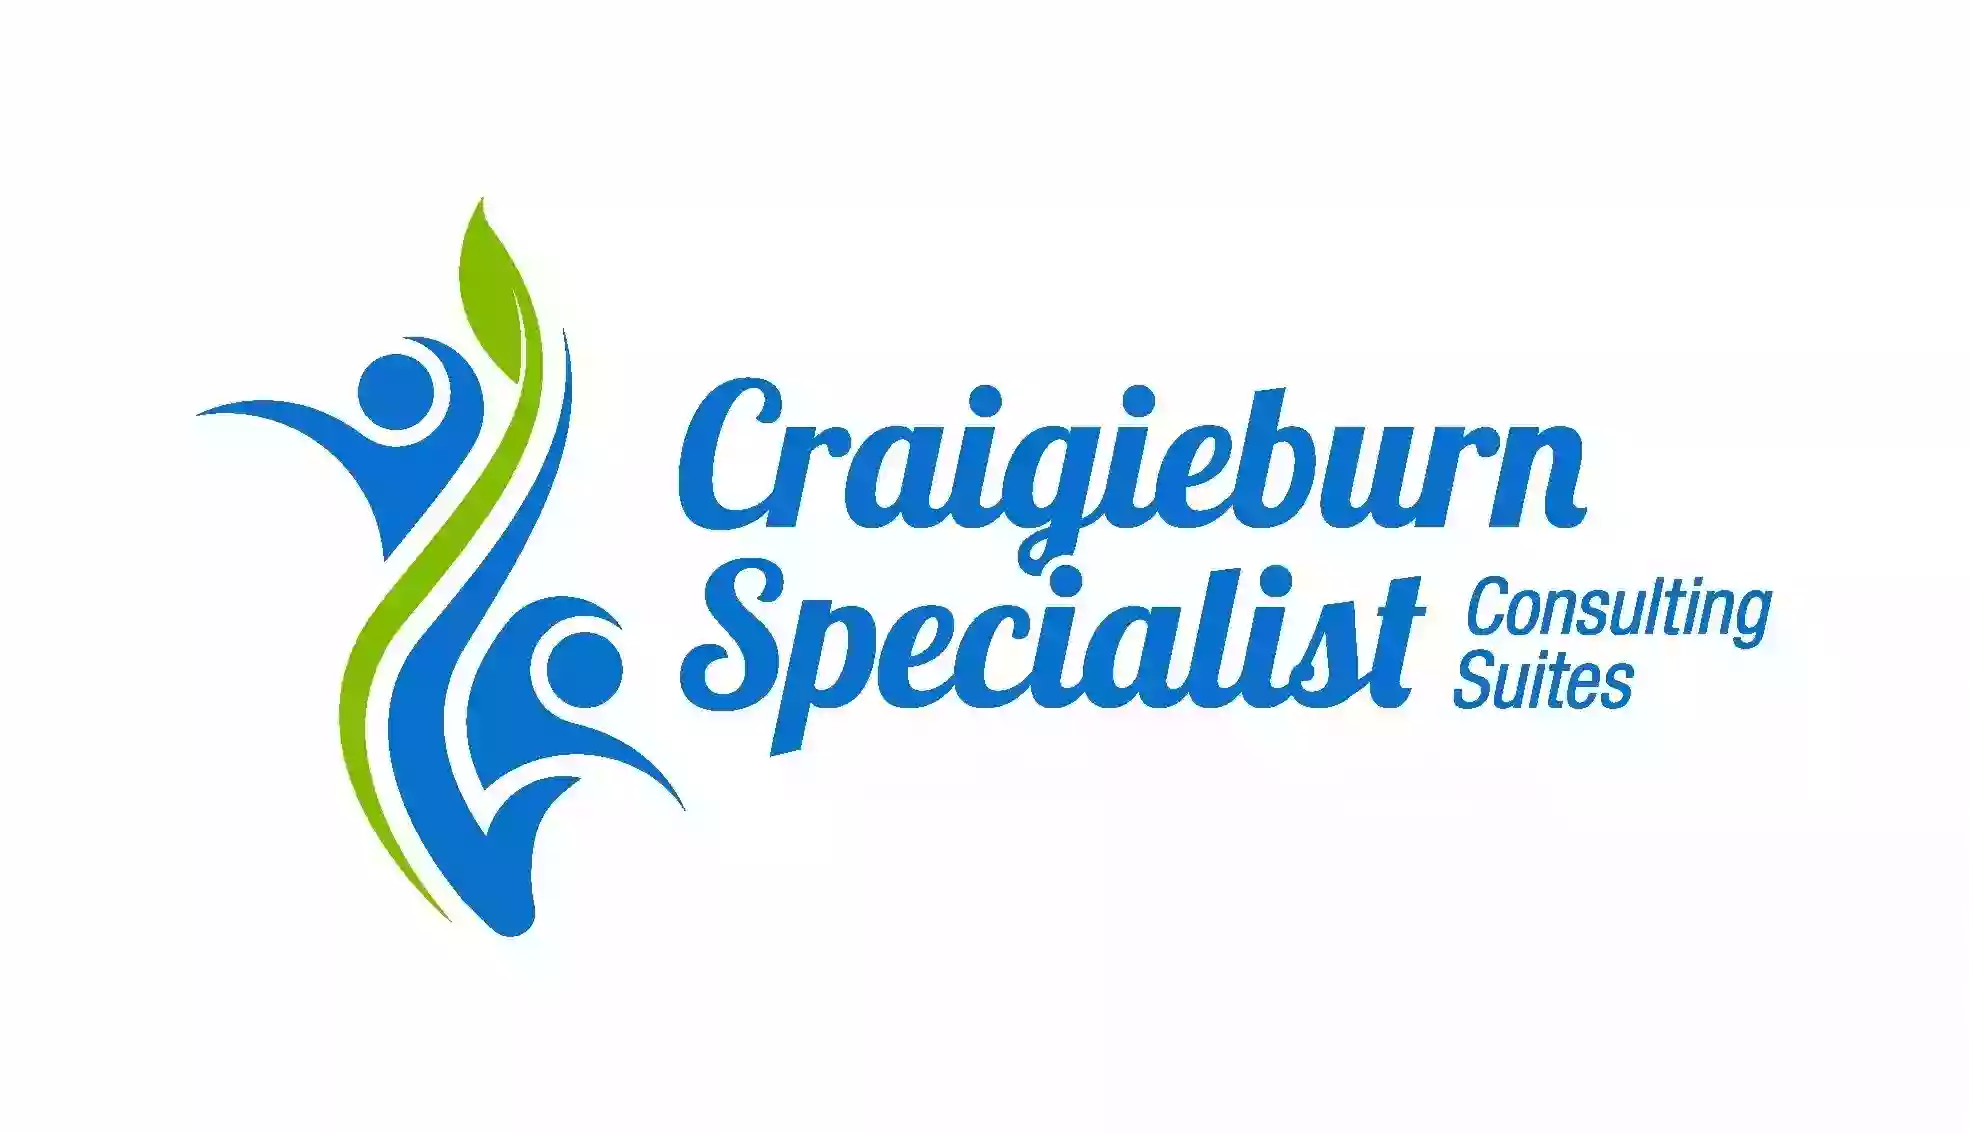 Craigieburn Specialist Consulting Suites